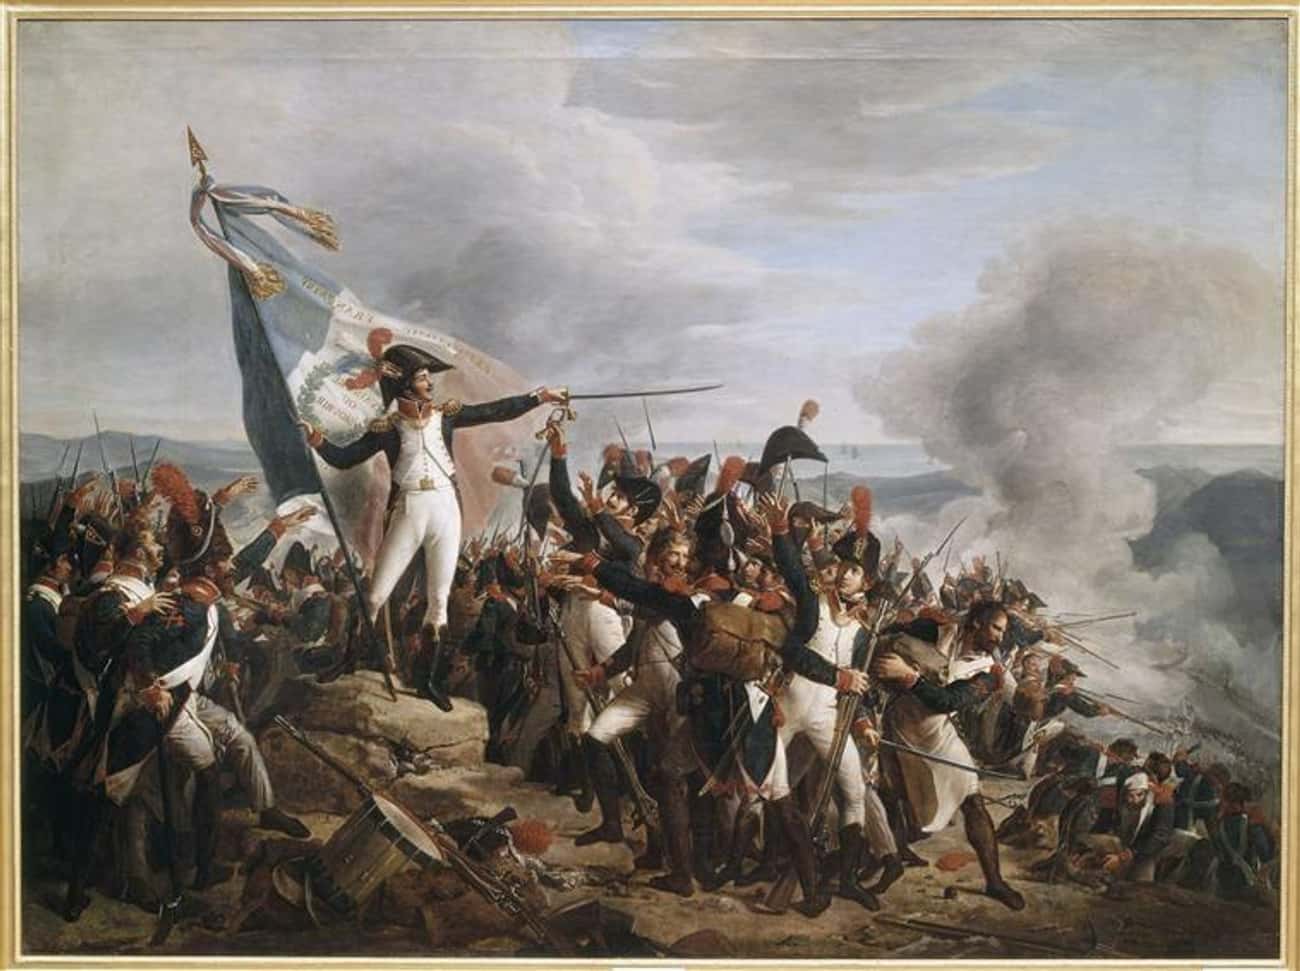 Итальянский поход бонапарта дата. Наполеон Бонапарт 1796. Итальянская кампания Наполеона 1796-1797. Картина битва у Монтенотте. Битва при Лоди 1796 Наполеон.